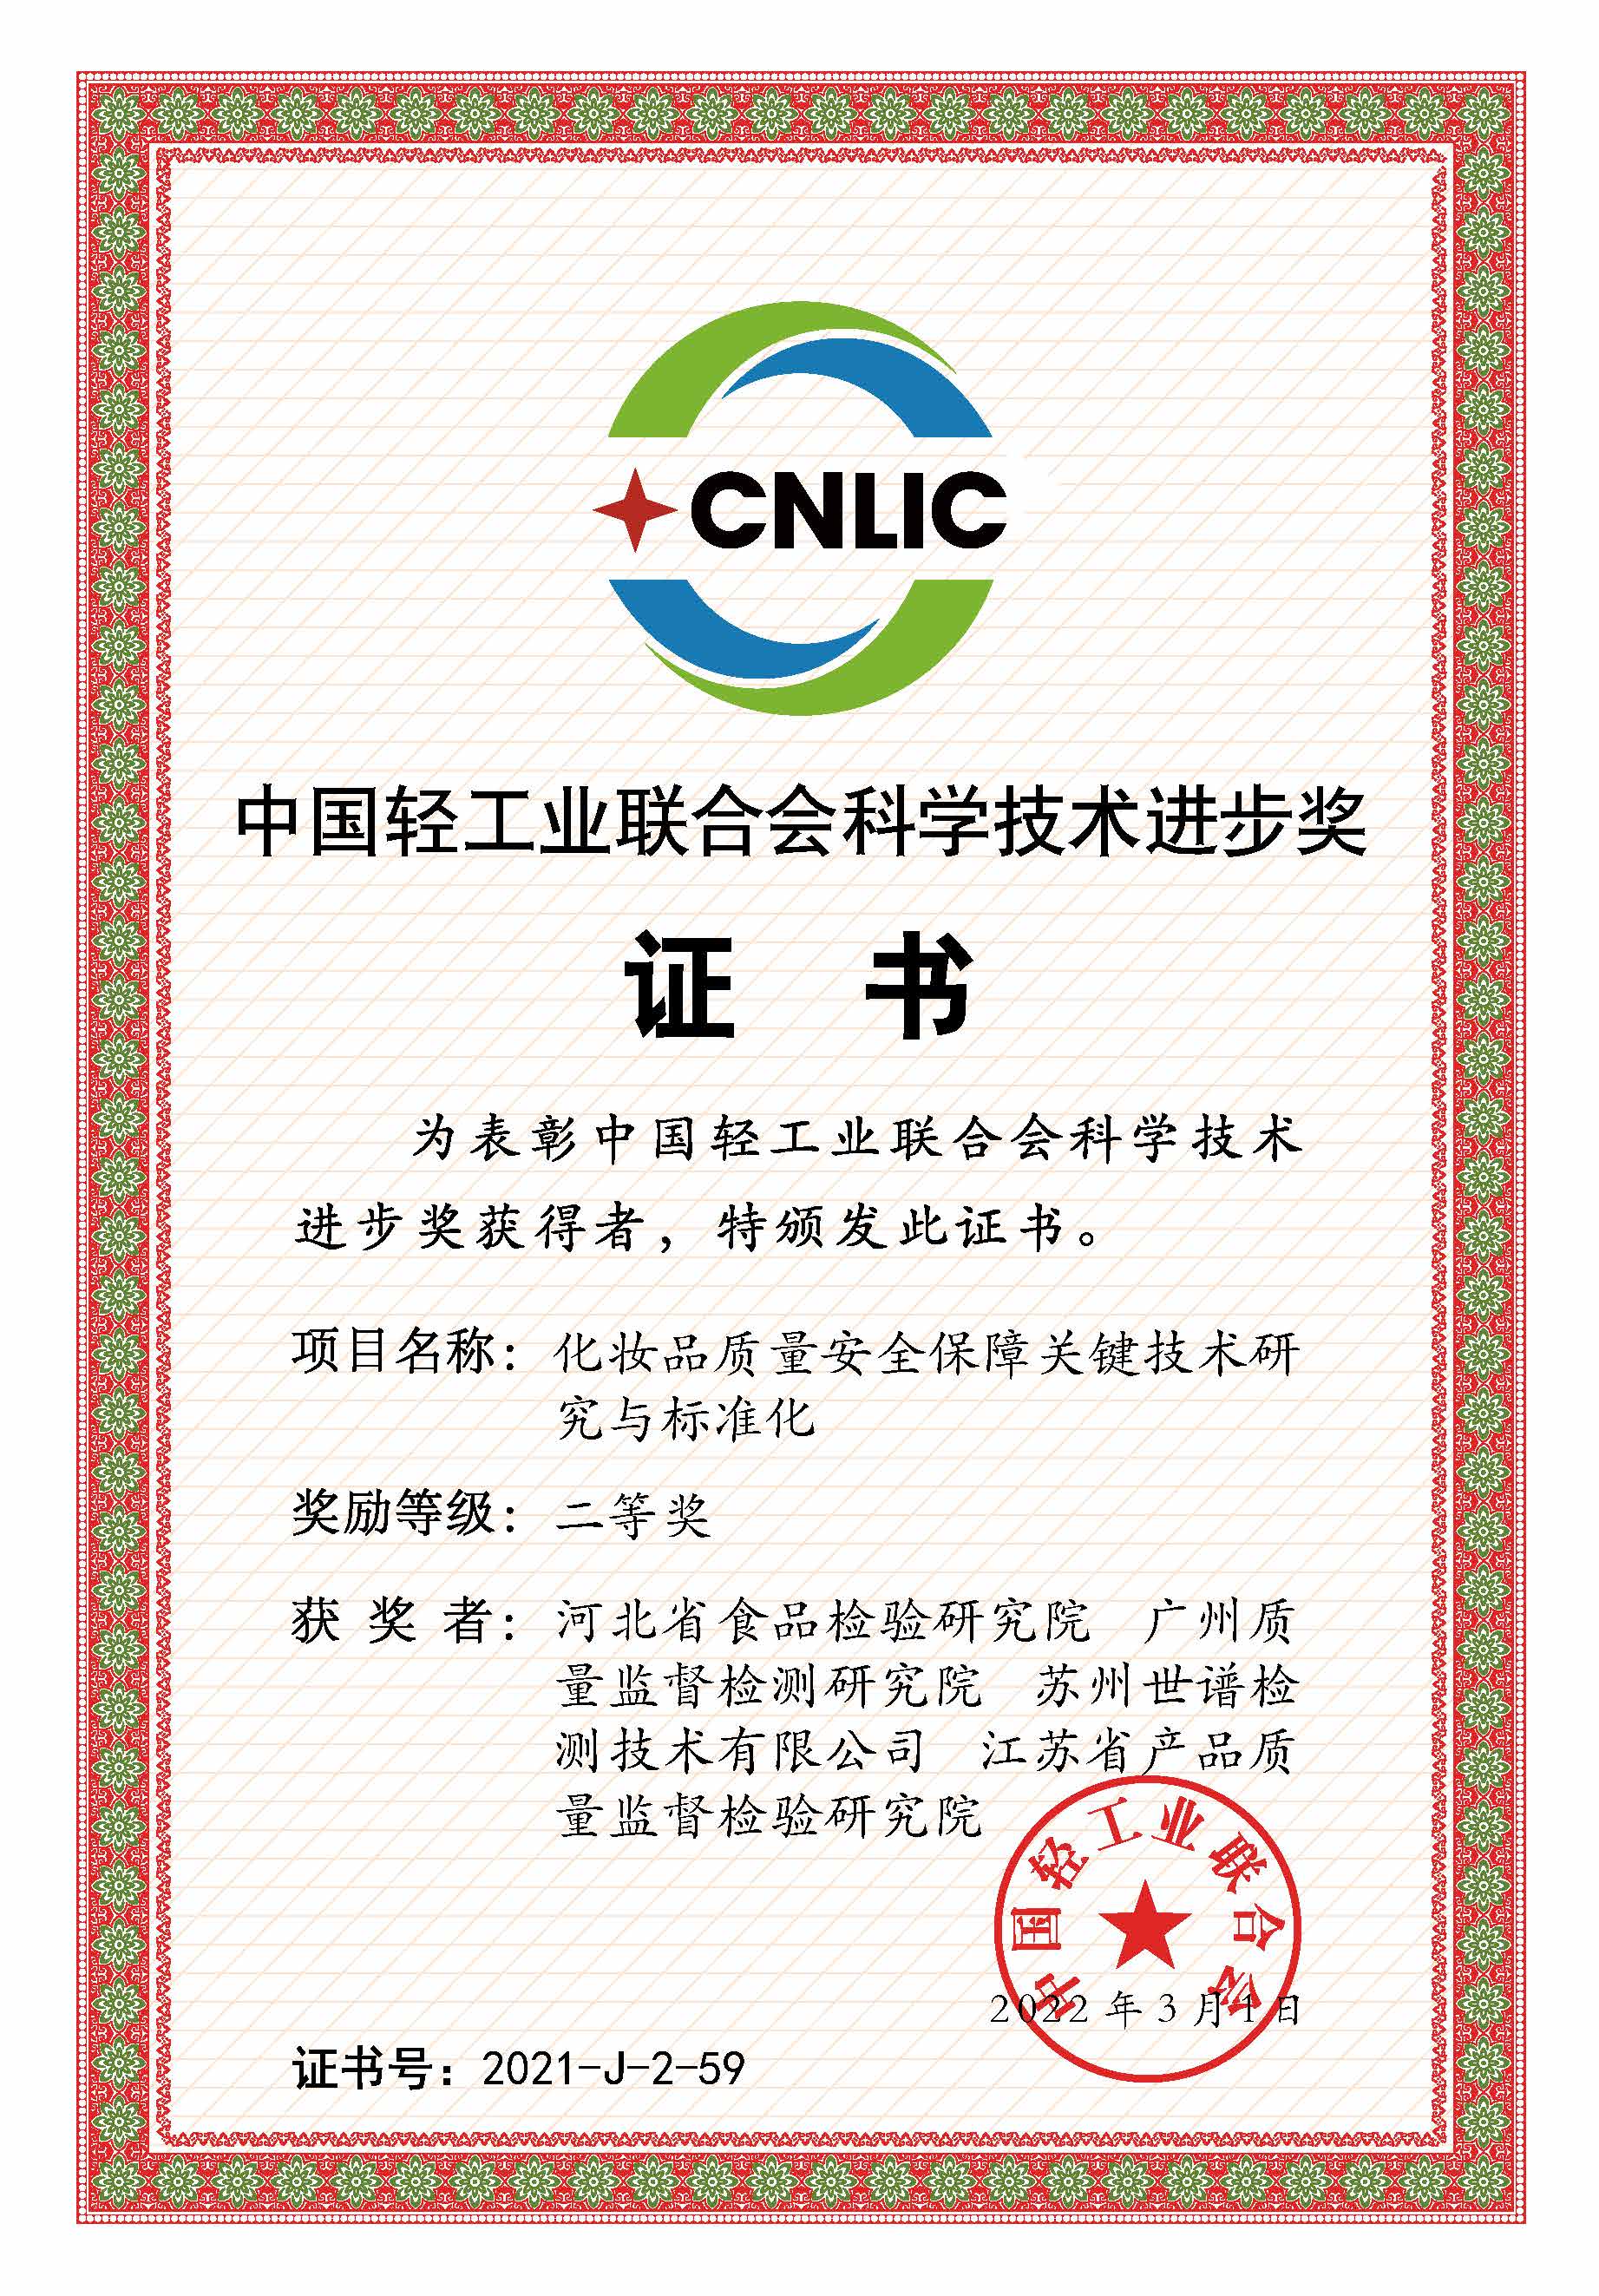 世谱检测荣获“中国轻工业联合会科学技术进步奖二等奖”